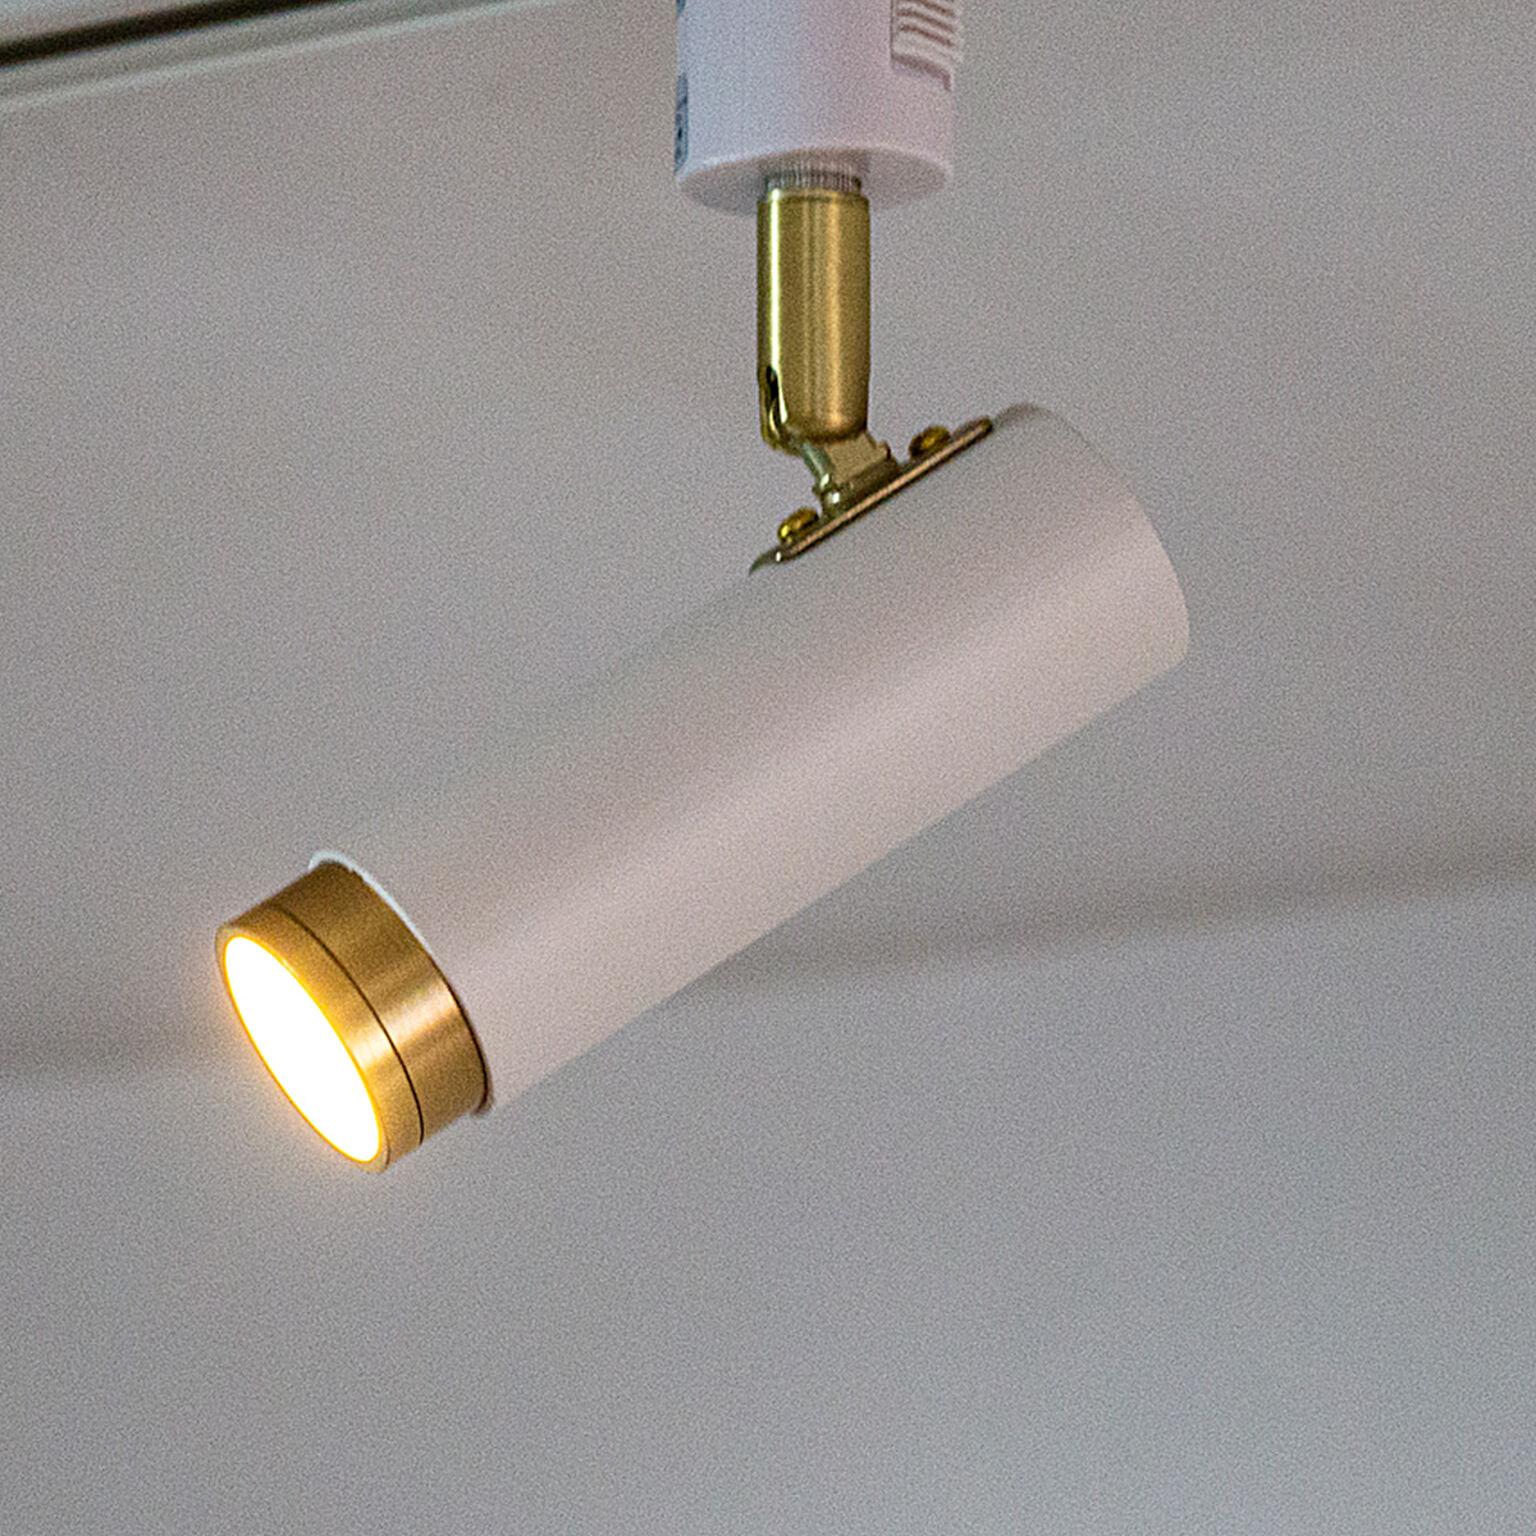 LED スポットライト 1灯 ノーシュ リモコンセット シーリングライト ダウンライト おしゃれ 照明器具 インテリア 北欧 カフェ モダン キッチン 調光 調色 アプリ対応 スマートスピーカー対応 